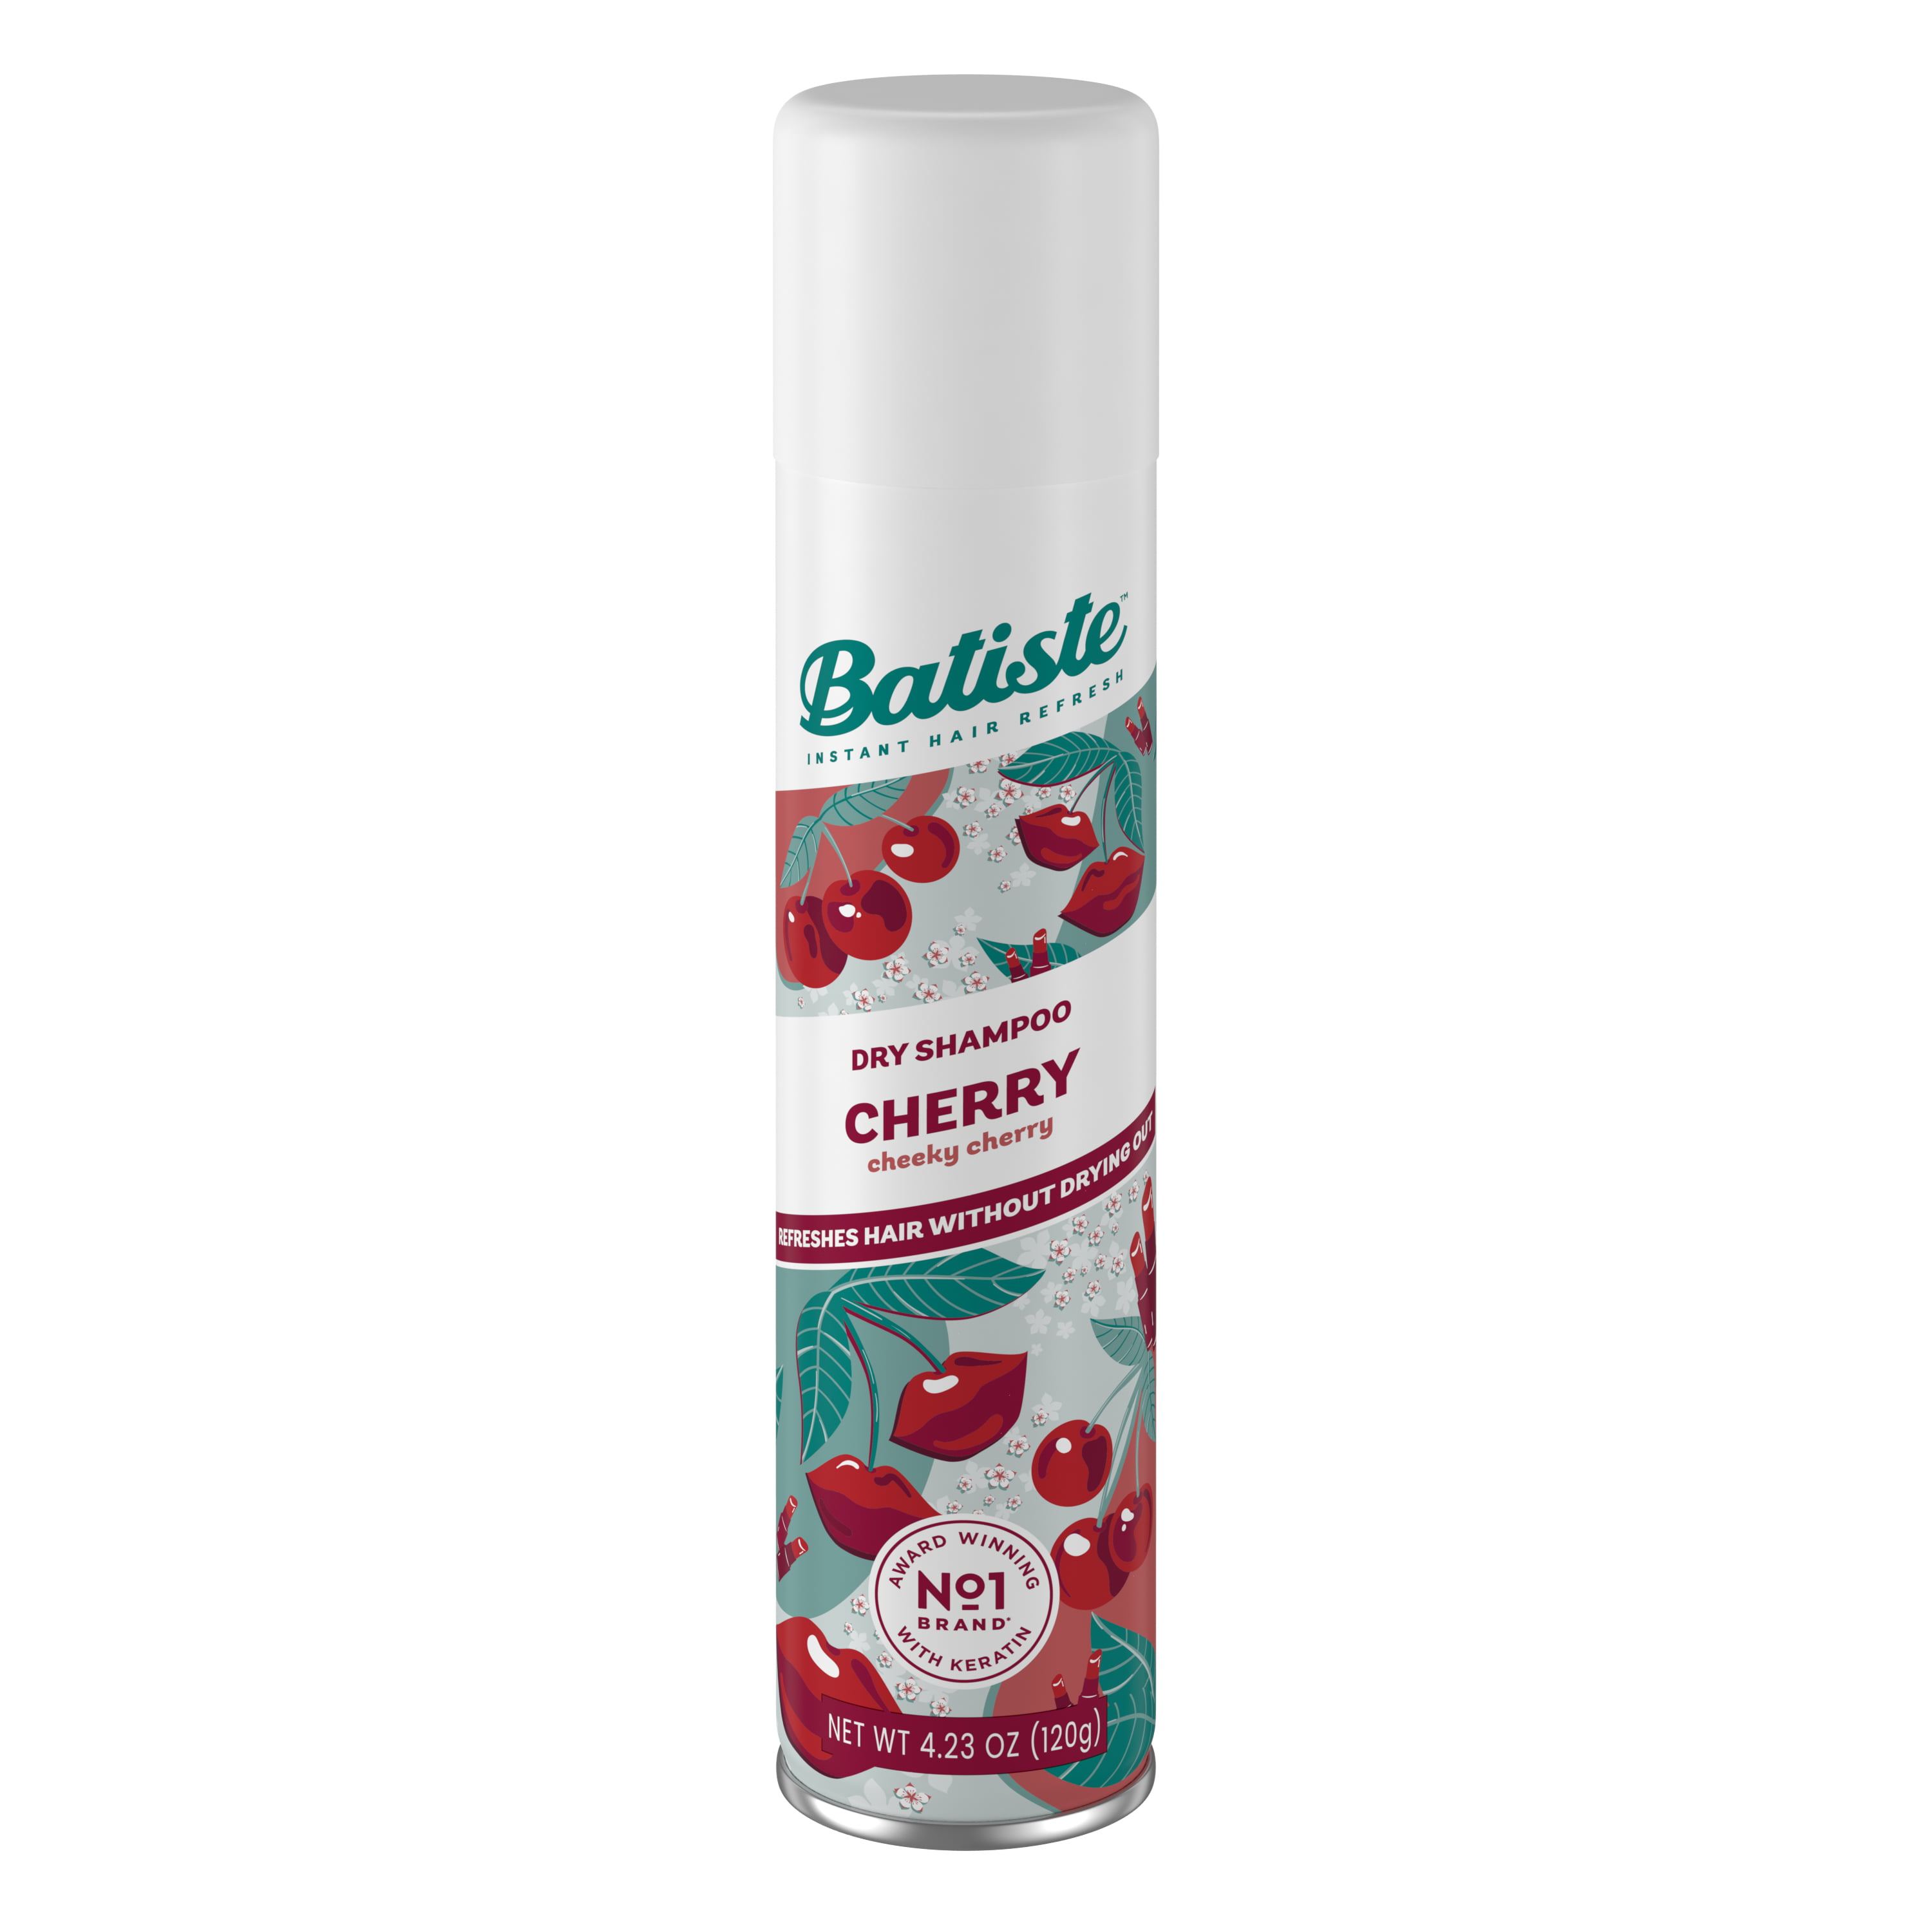 Bestået Vuggeviser Indtil nu Batiste Dry Shampoo, Cherry Fragrance, 4.23 OZ.- Packaging May Vary -  Walmart.com